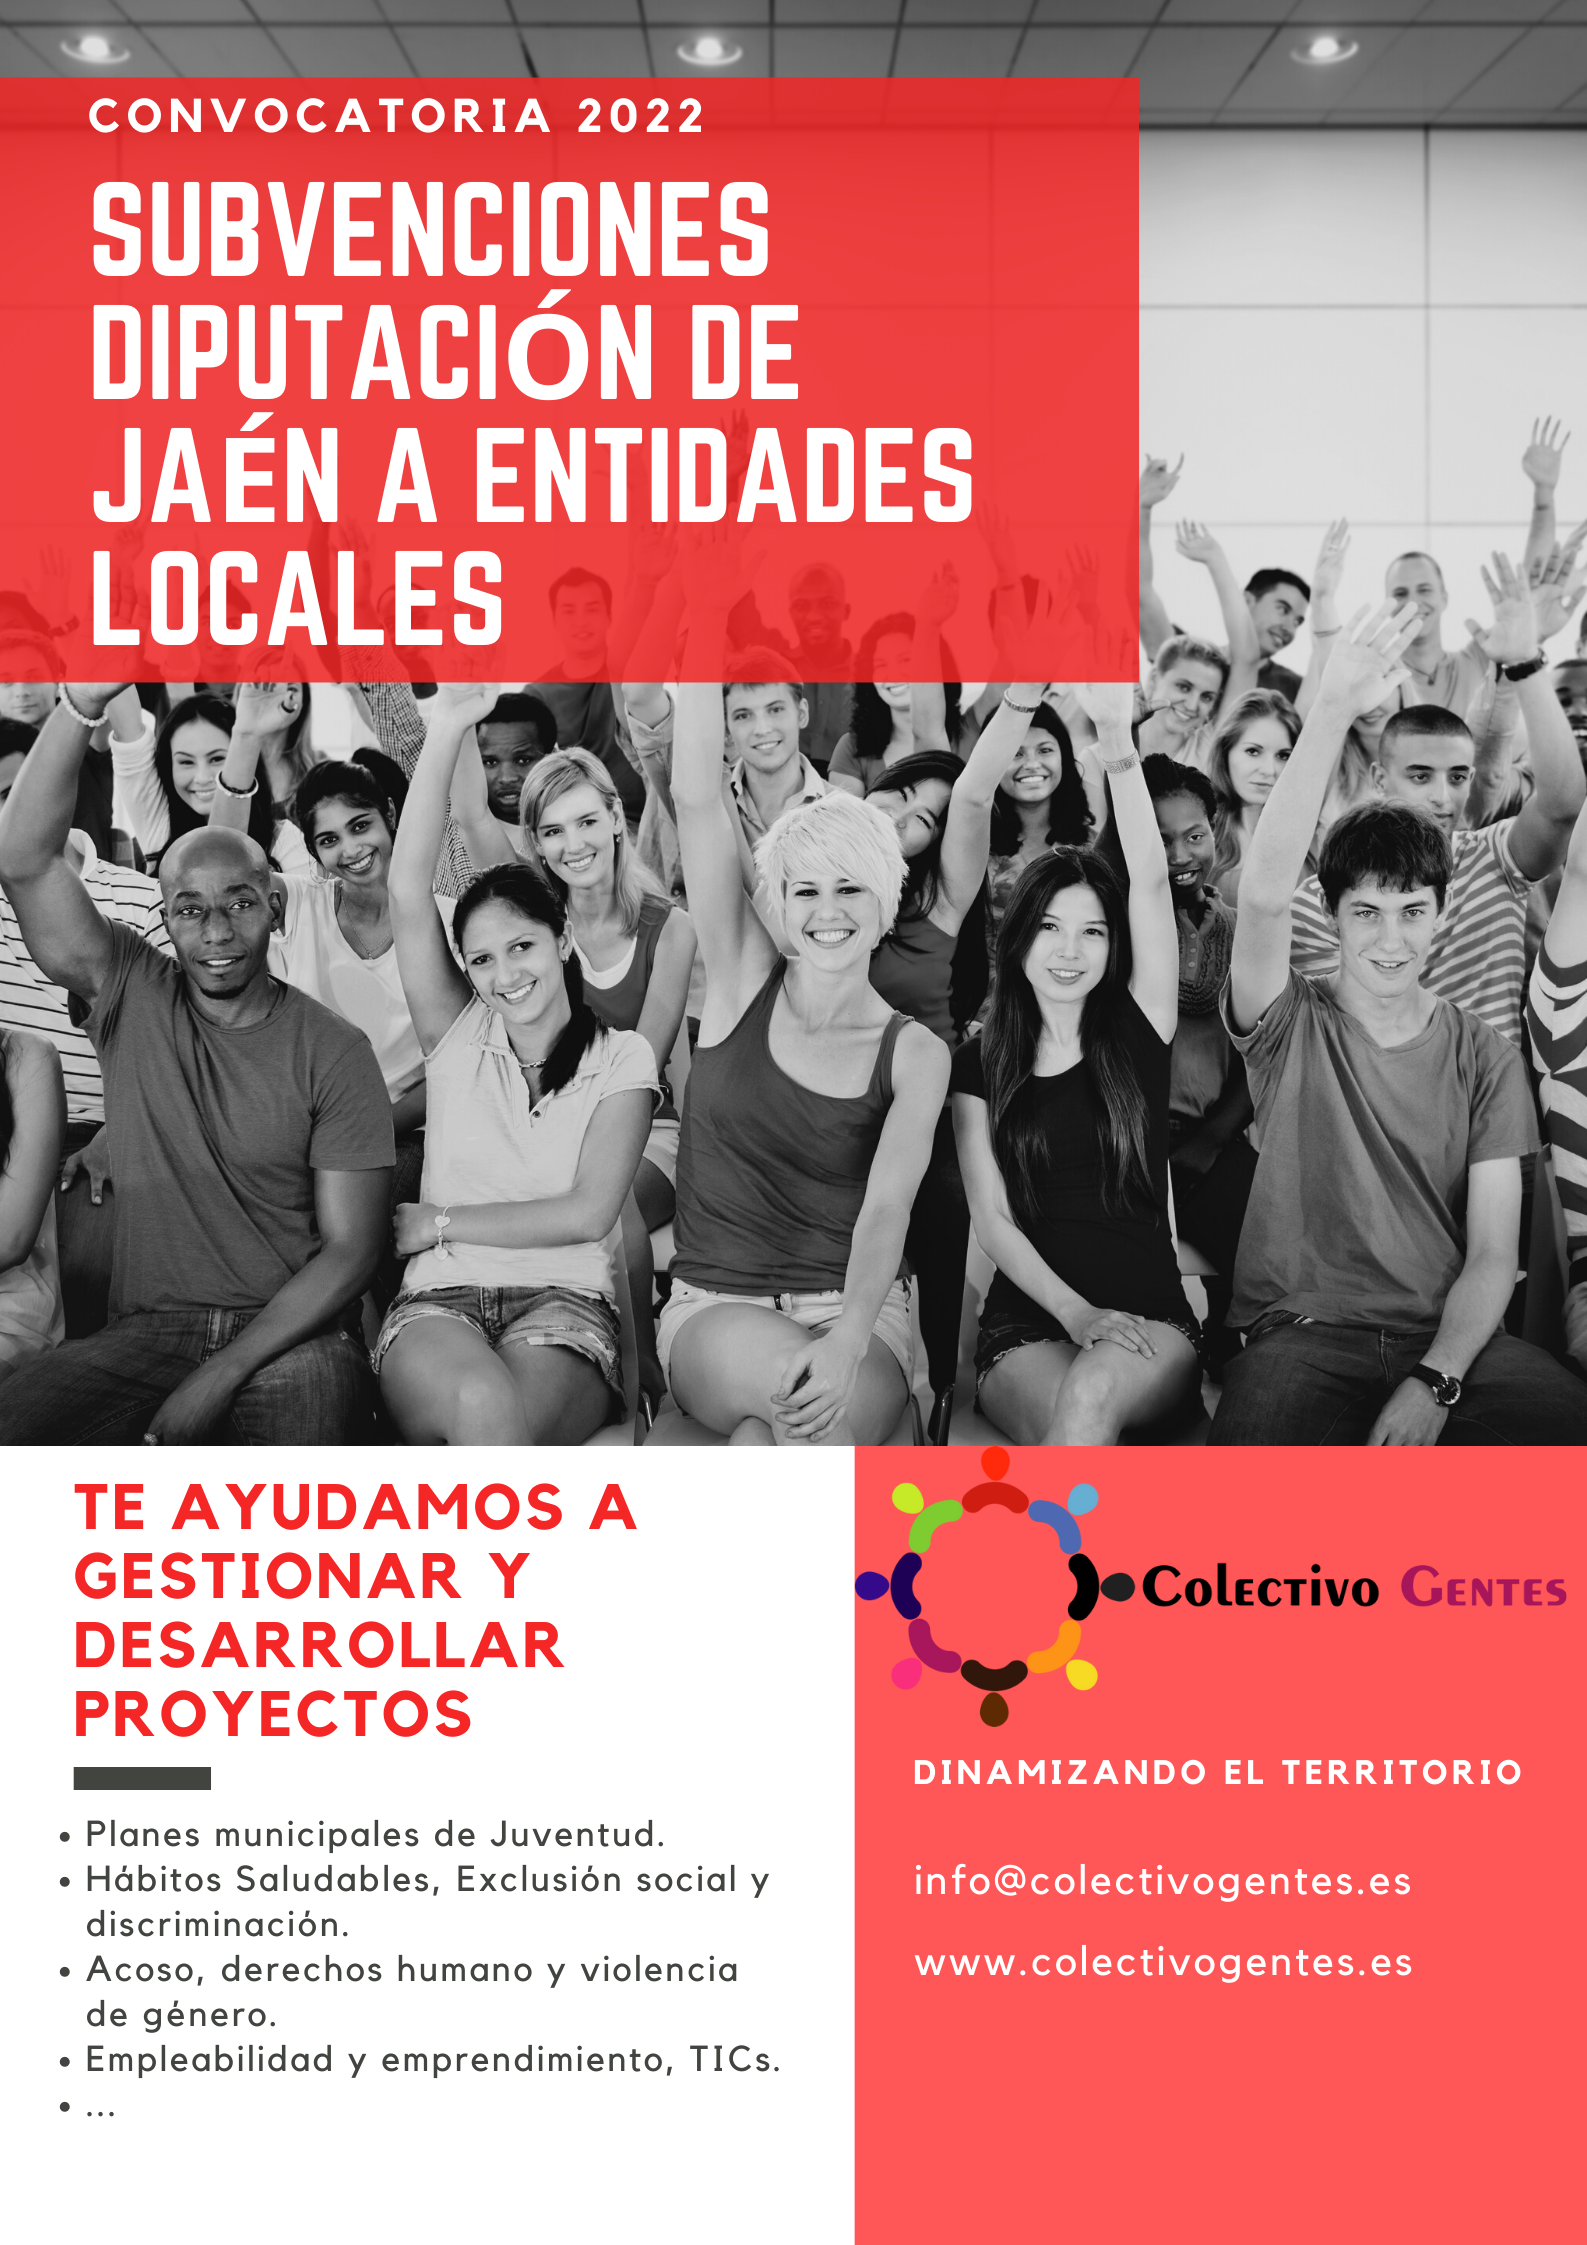 Gestión de Subvenciones de la Diputación de Jaén para Ayuntamientos en materia de Juventud